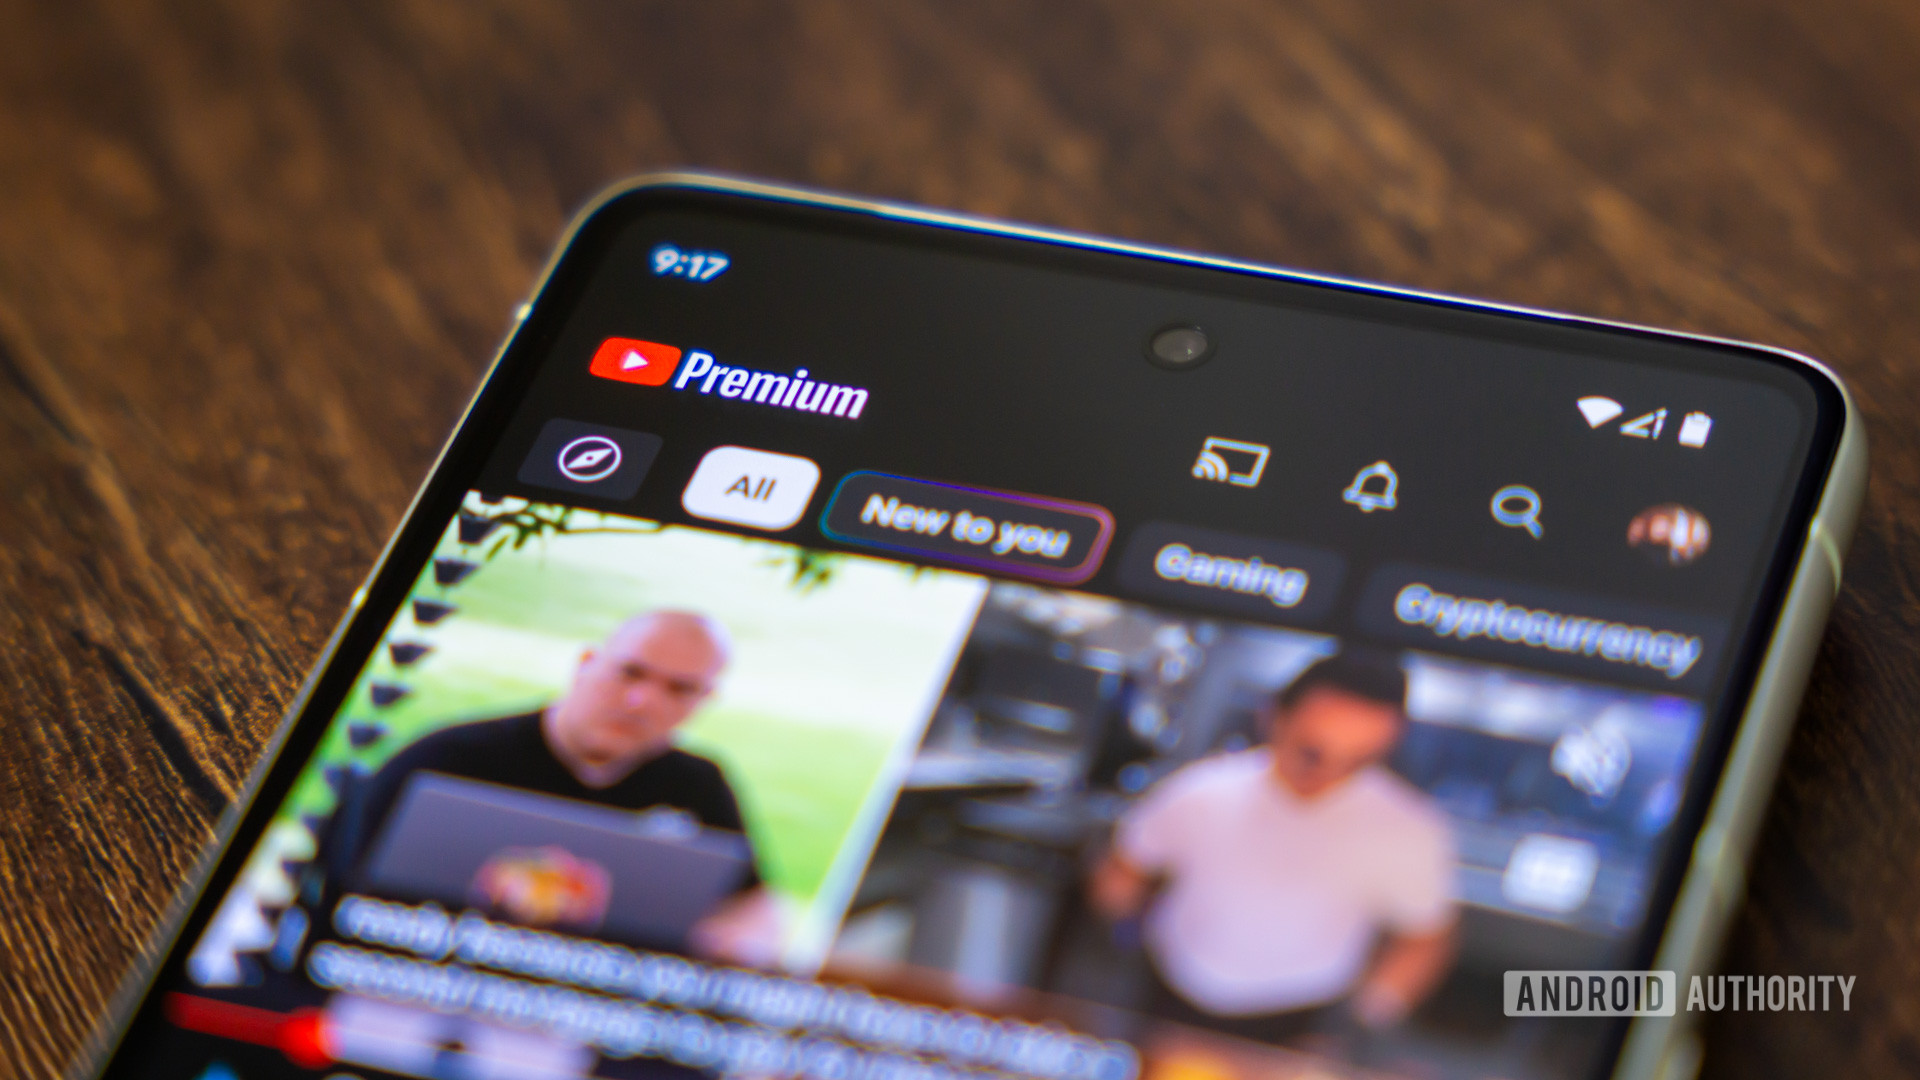 YouTube premium app on smartphone stock photo (2)